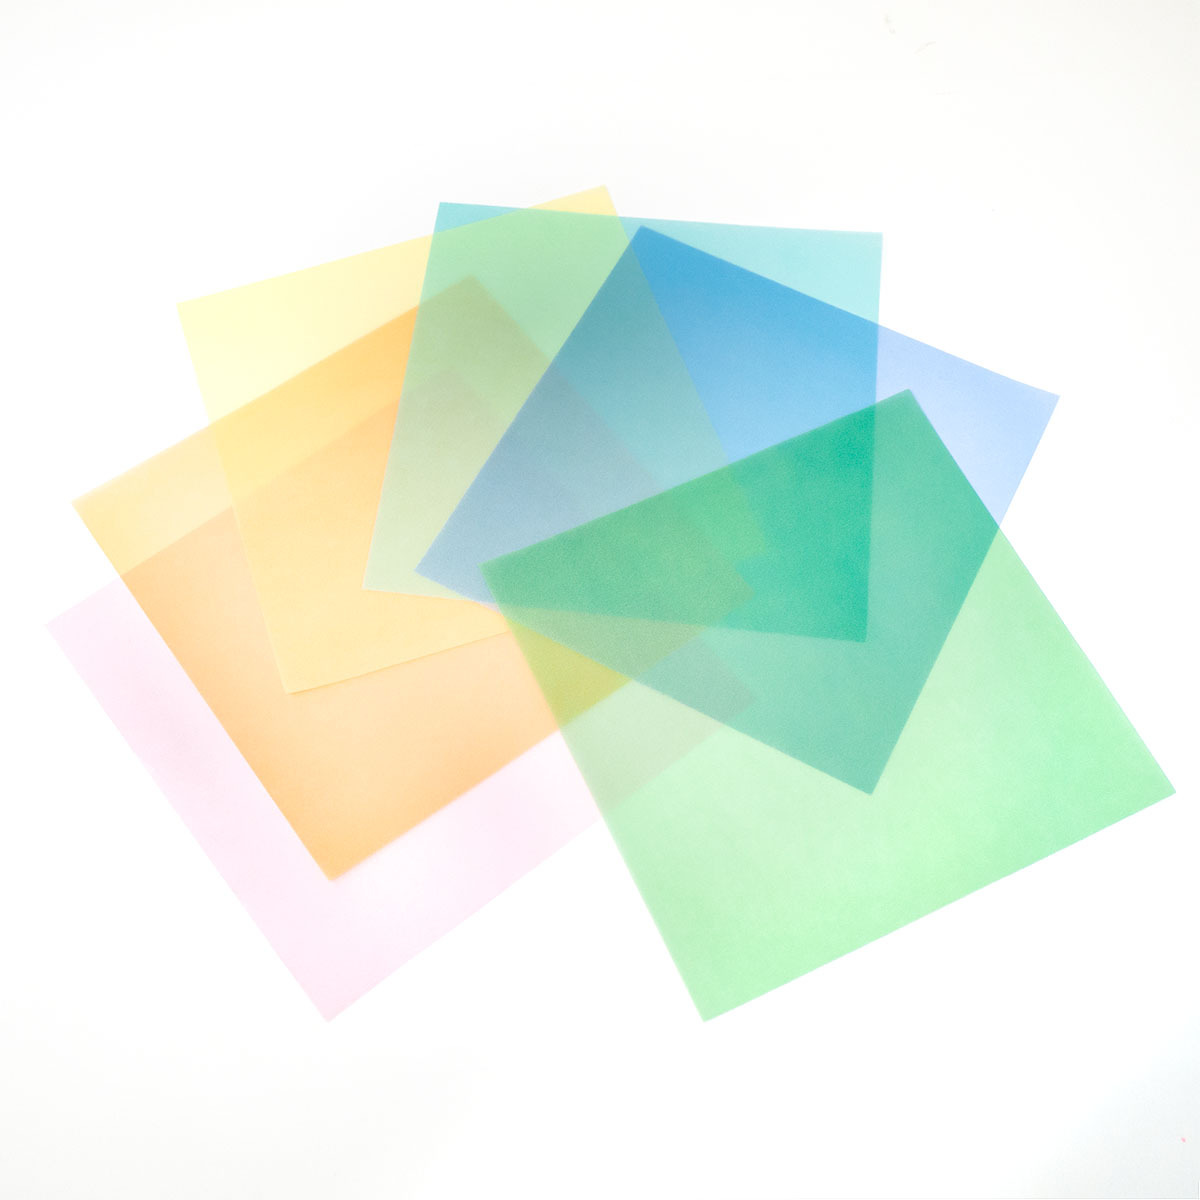 glasin бумага пастель цвет одиночный цвет оригами размер 15×15cm... дизайн бумага ko Large . материалы 